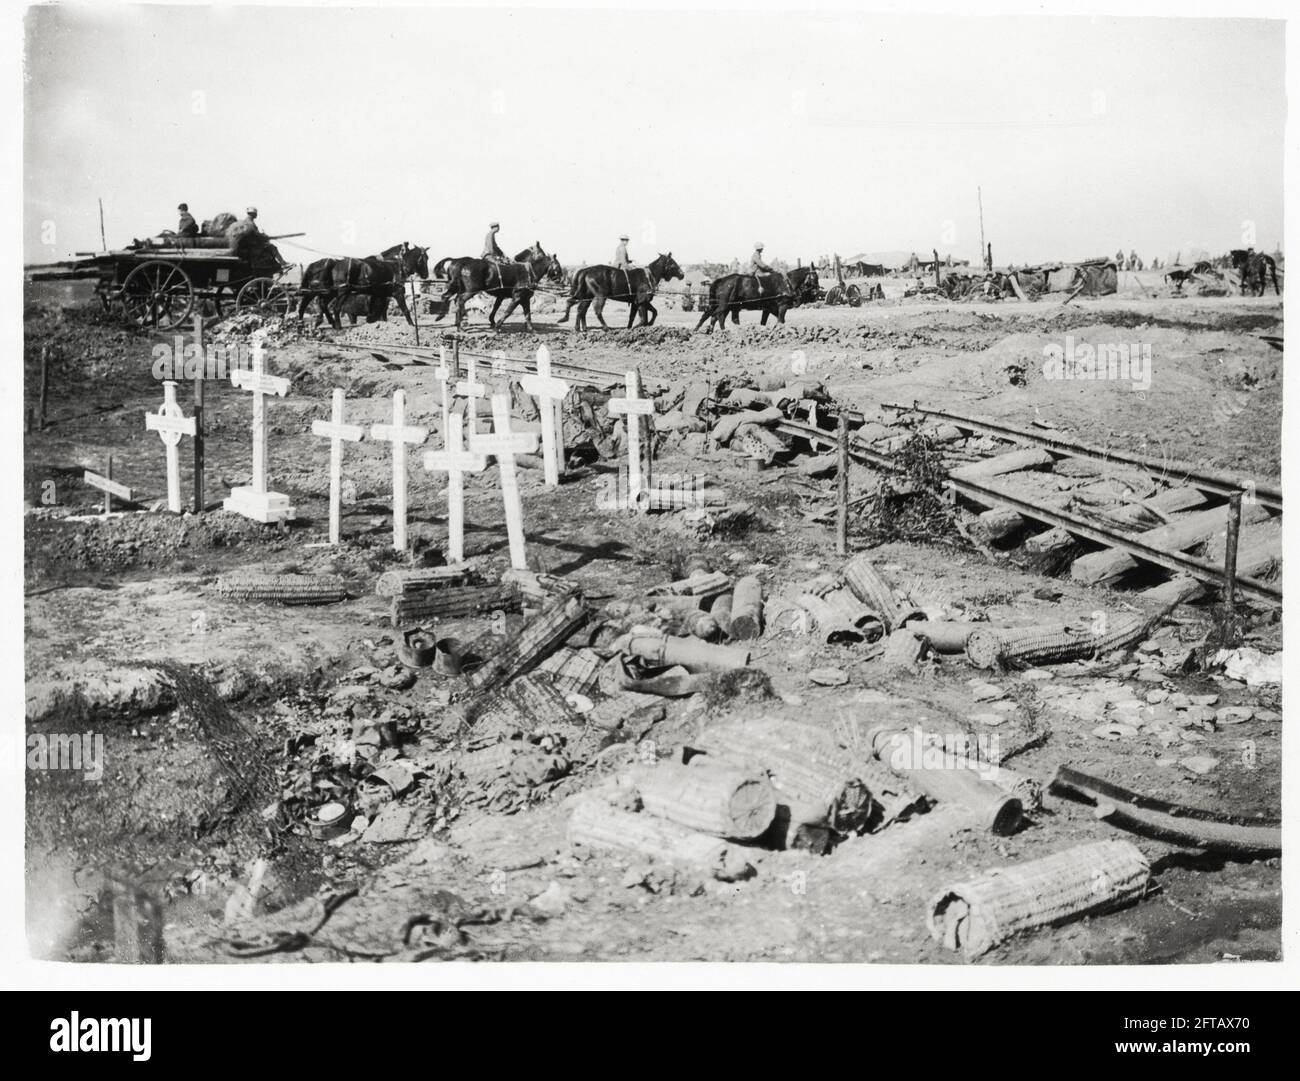 Première Guerre mondiale, première Guerre mondiale, front occidental - UN cimetière britannique, une piste de chemin de fer écrasée, des munitions allemandes et des chevaux, France Banque D'Images